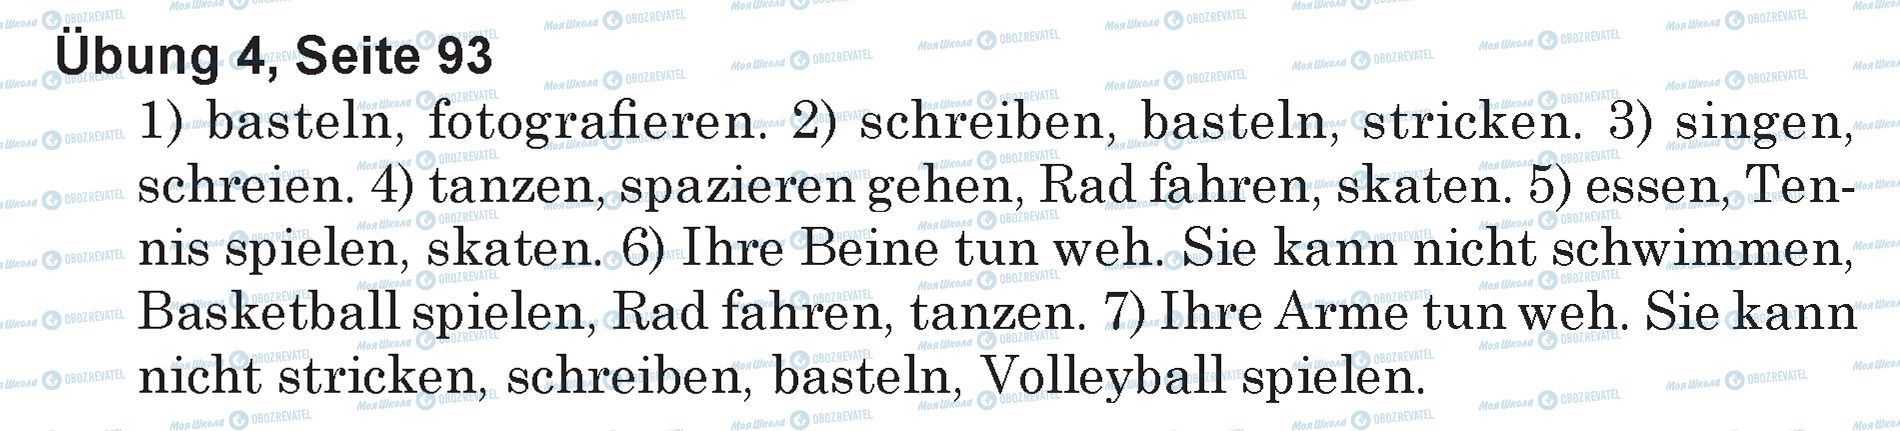 ГДЗ Немецкий язык 5 класс страница Ubung 4, Seite 93